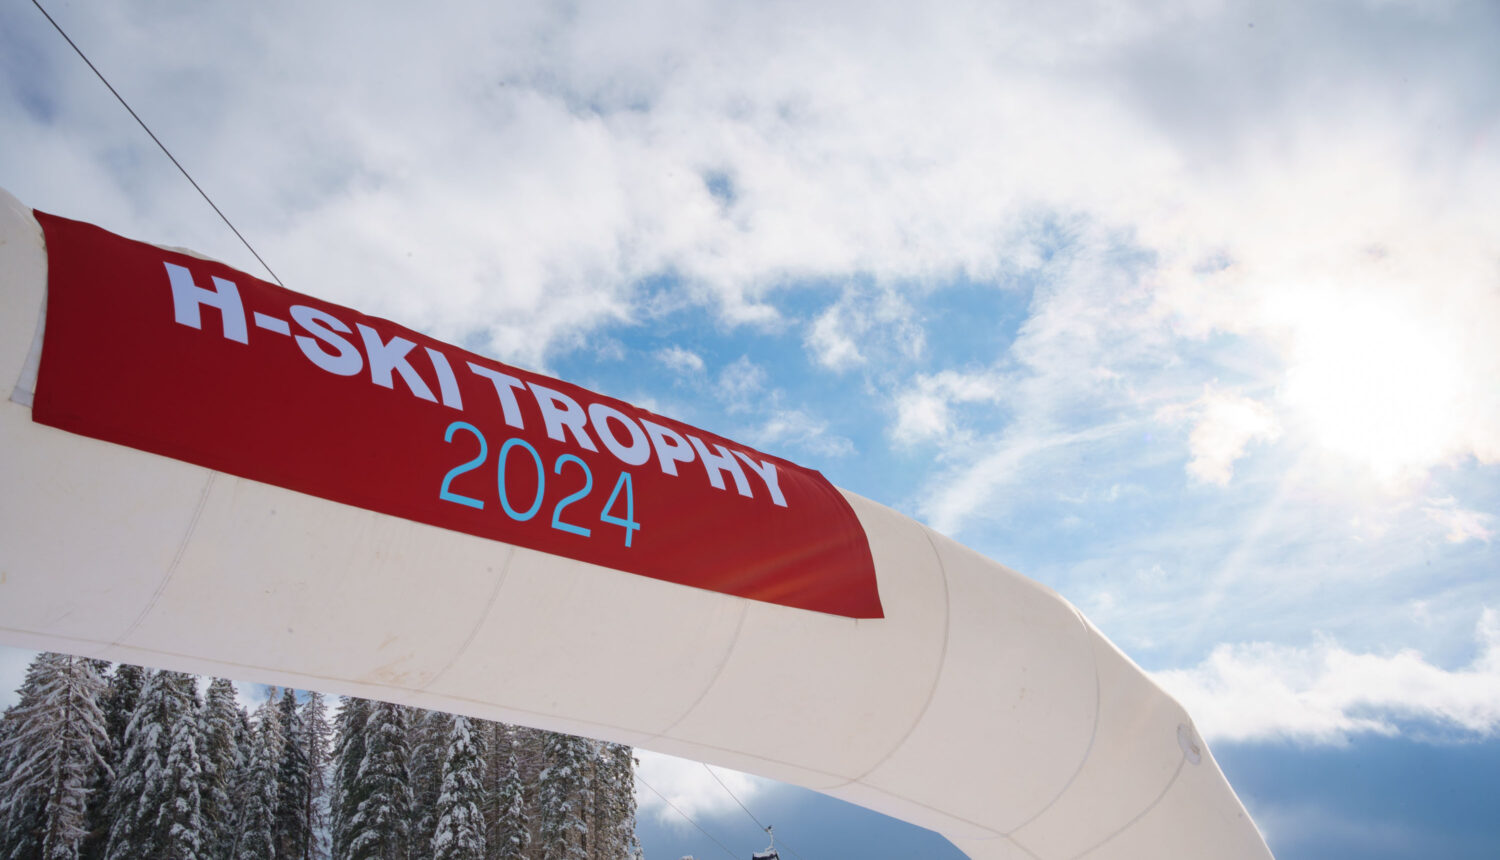 H-Ski Trophy: a Shared Triumph!